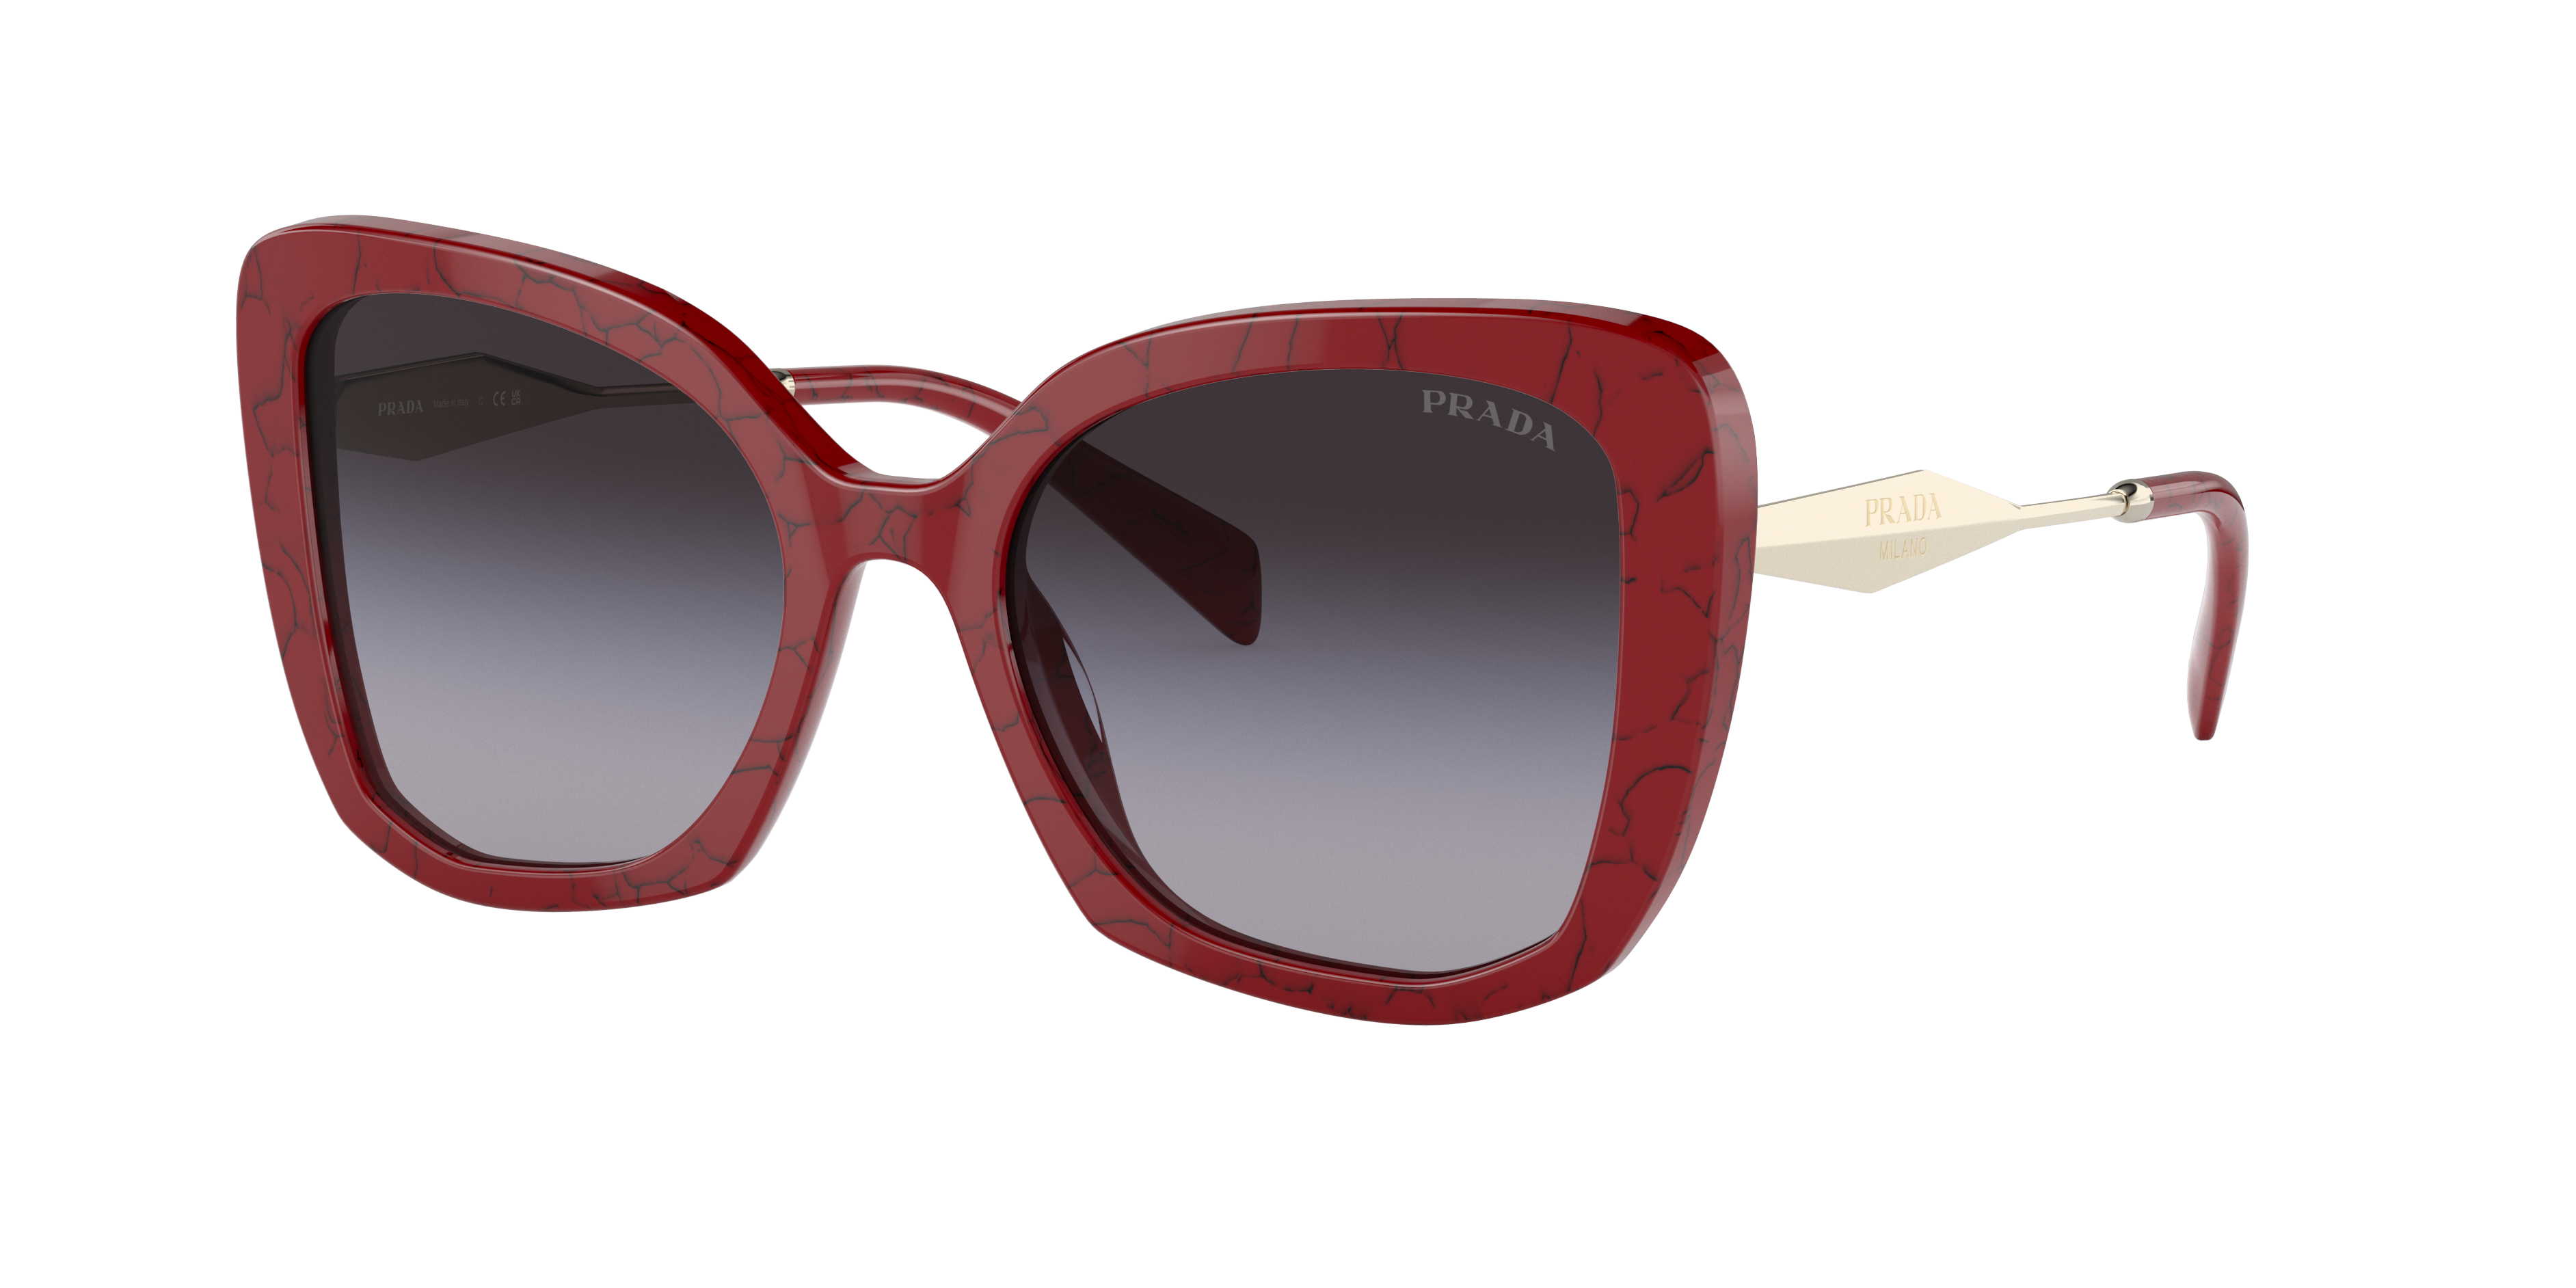 Consulte nosso catálogo de Óculos de Sol Prada Eyewear com diversos modelos e preços para sua escolha.